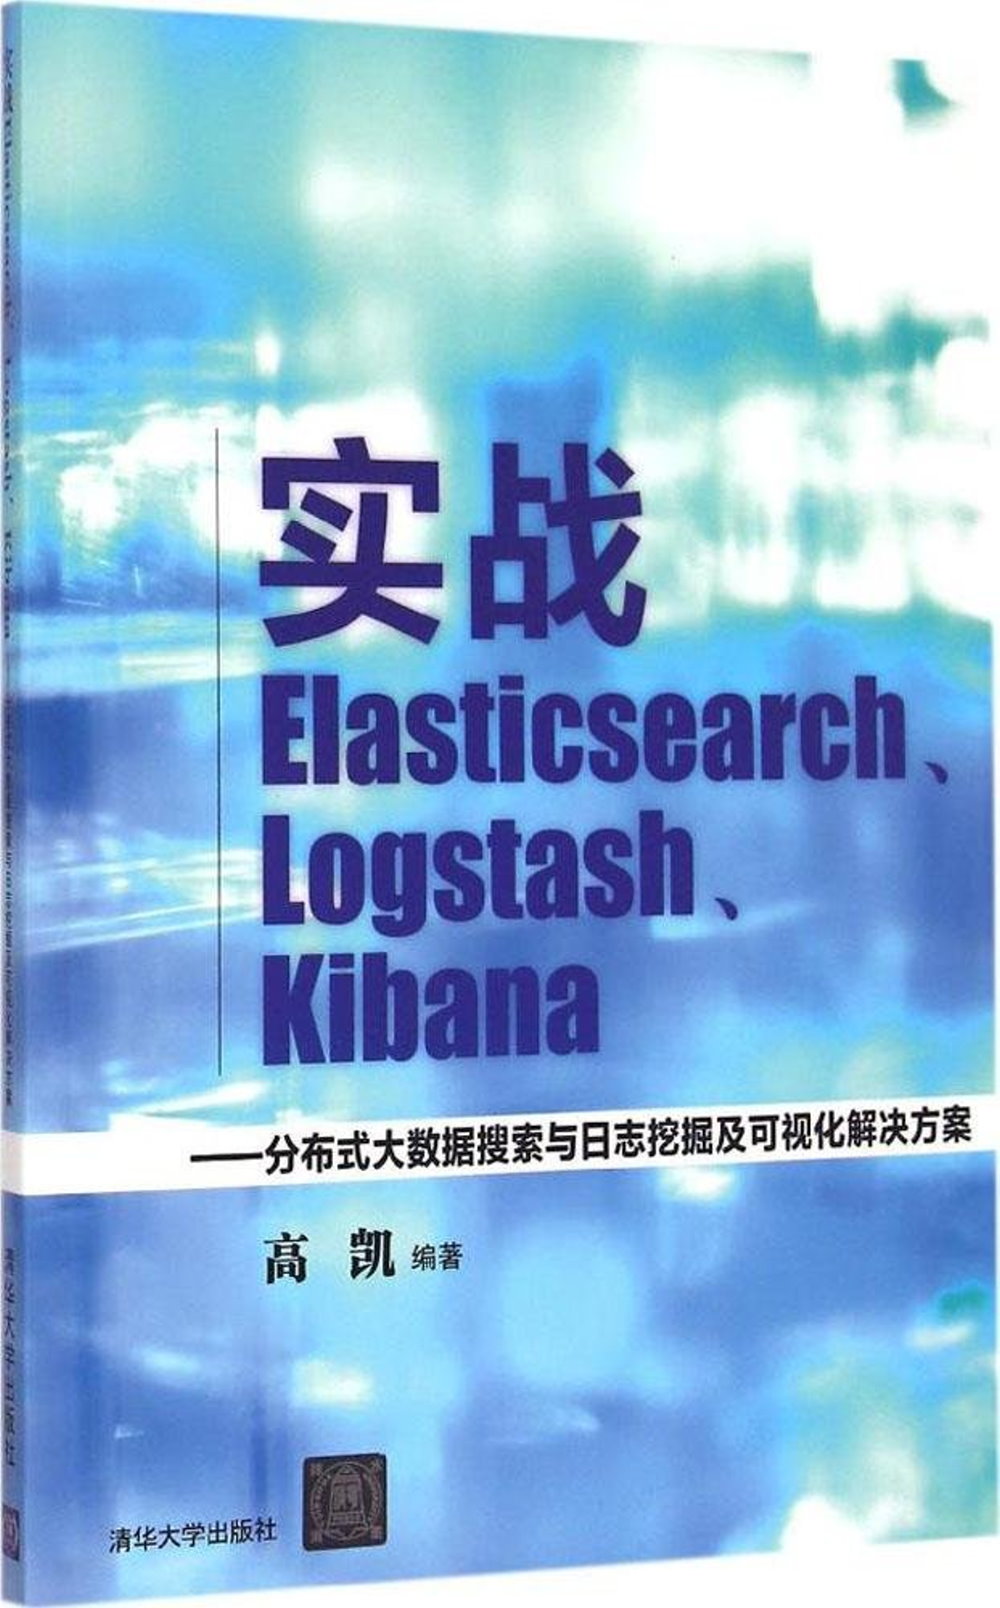 實戰Elasticsearch、Logstash、Kibana--分布式大數據搜索與日志挖掘及可視化解決方案